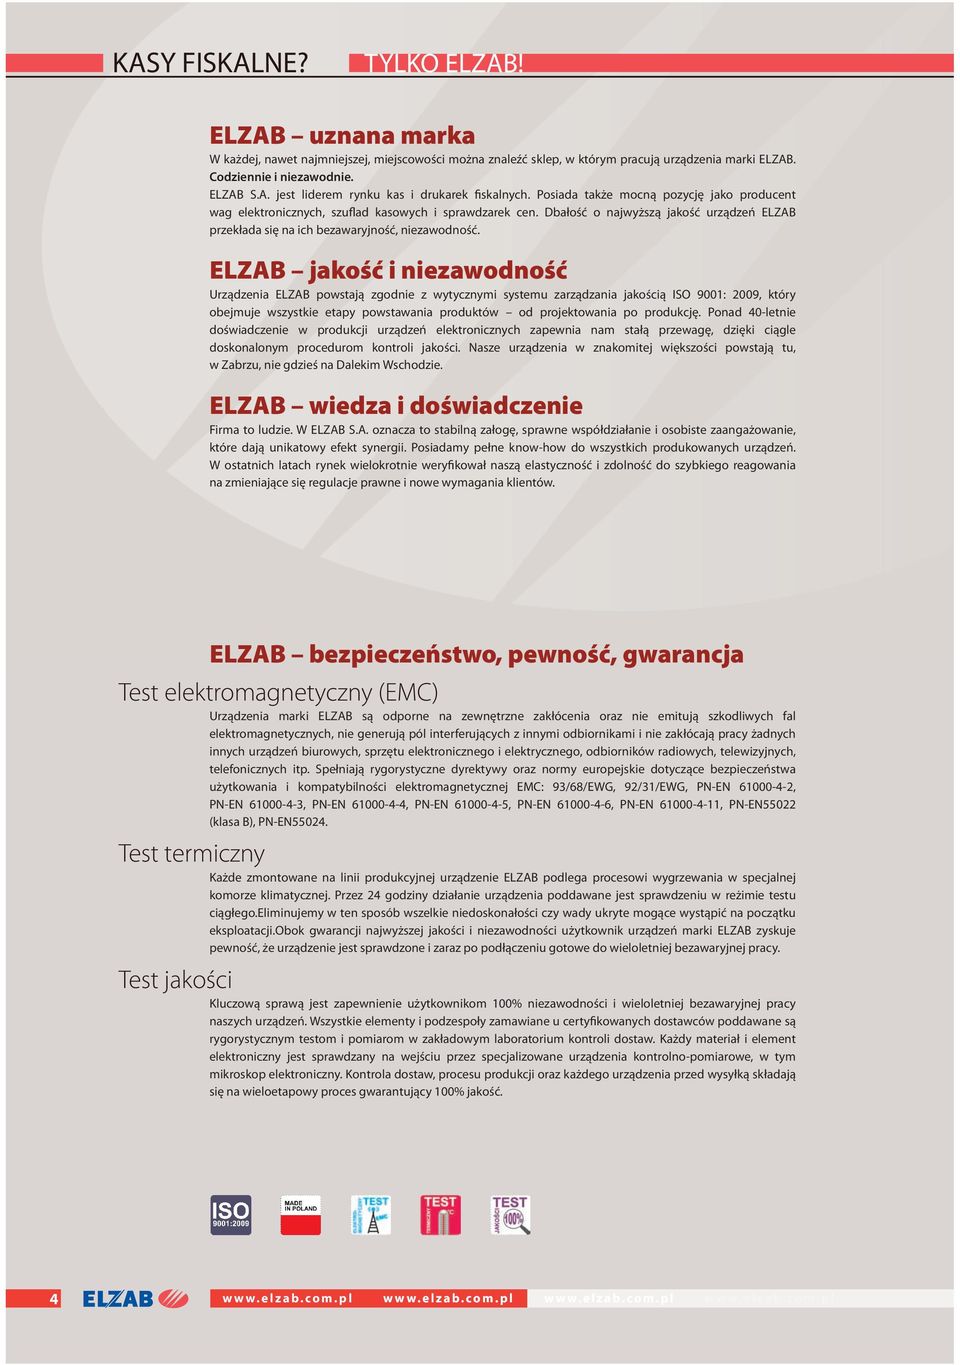 ELZAB jakość i niezawodność Urządzenia ELZAB powstają zgodnie z wytycznymi systemu zarządzania jakością ISO 9001: 2009, który obejmuje wszystkie etapy powstawania produktów od projektowania po